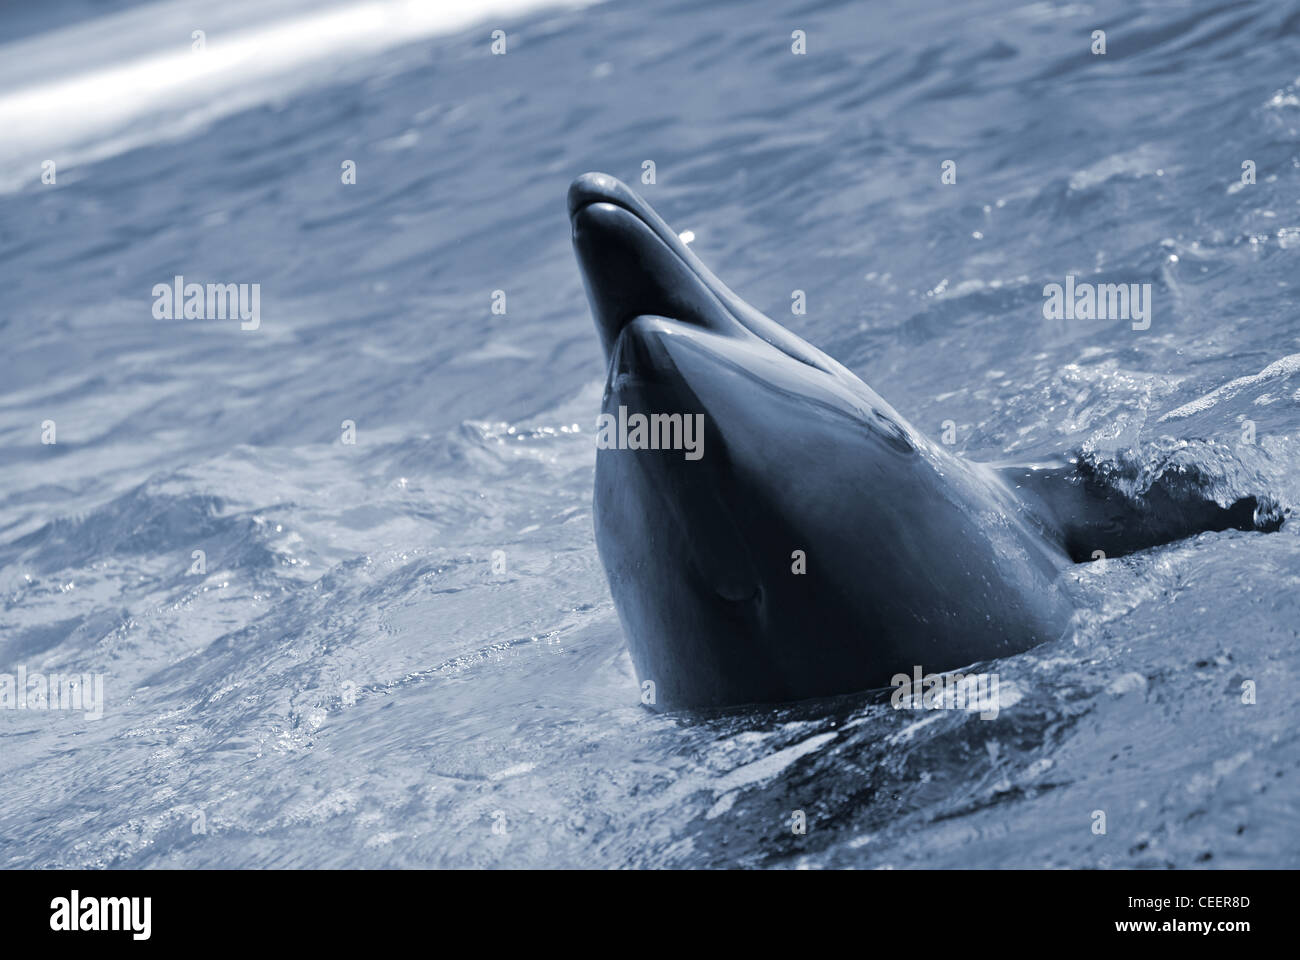 Die Flasche – Nosed Dolphin im Aquarium. Closeup Stockfoto